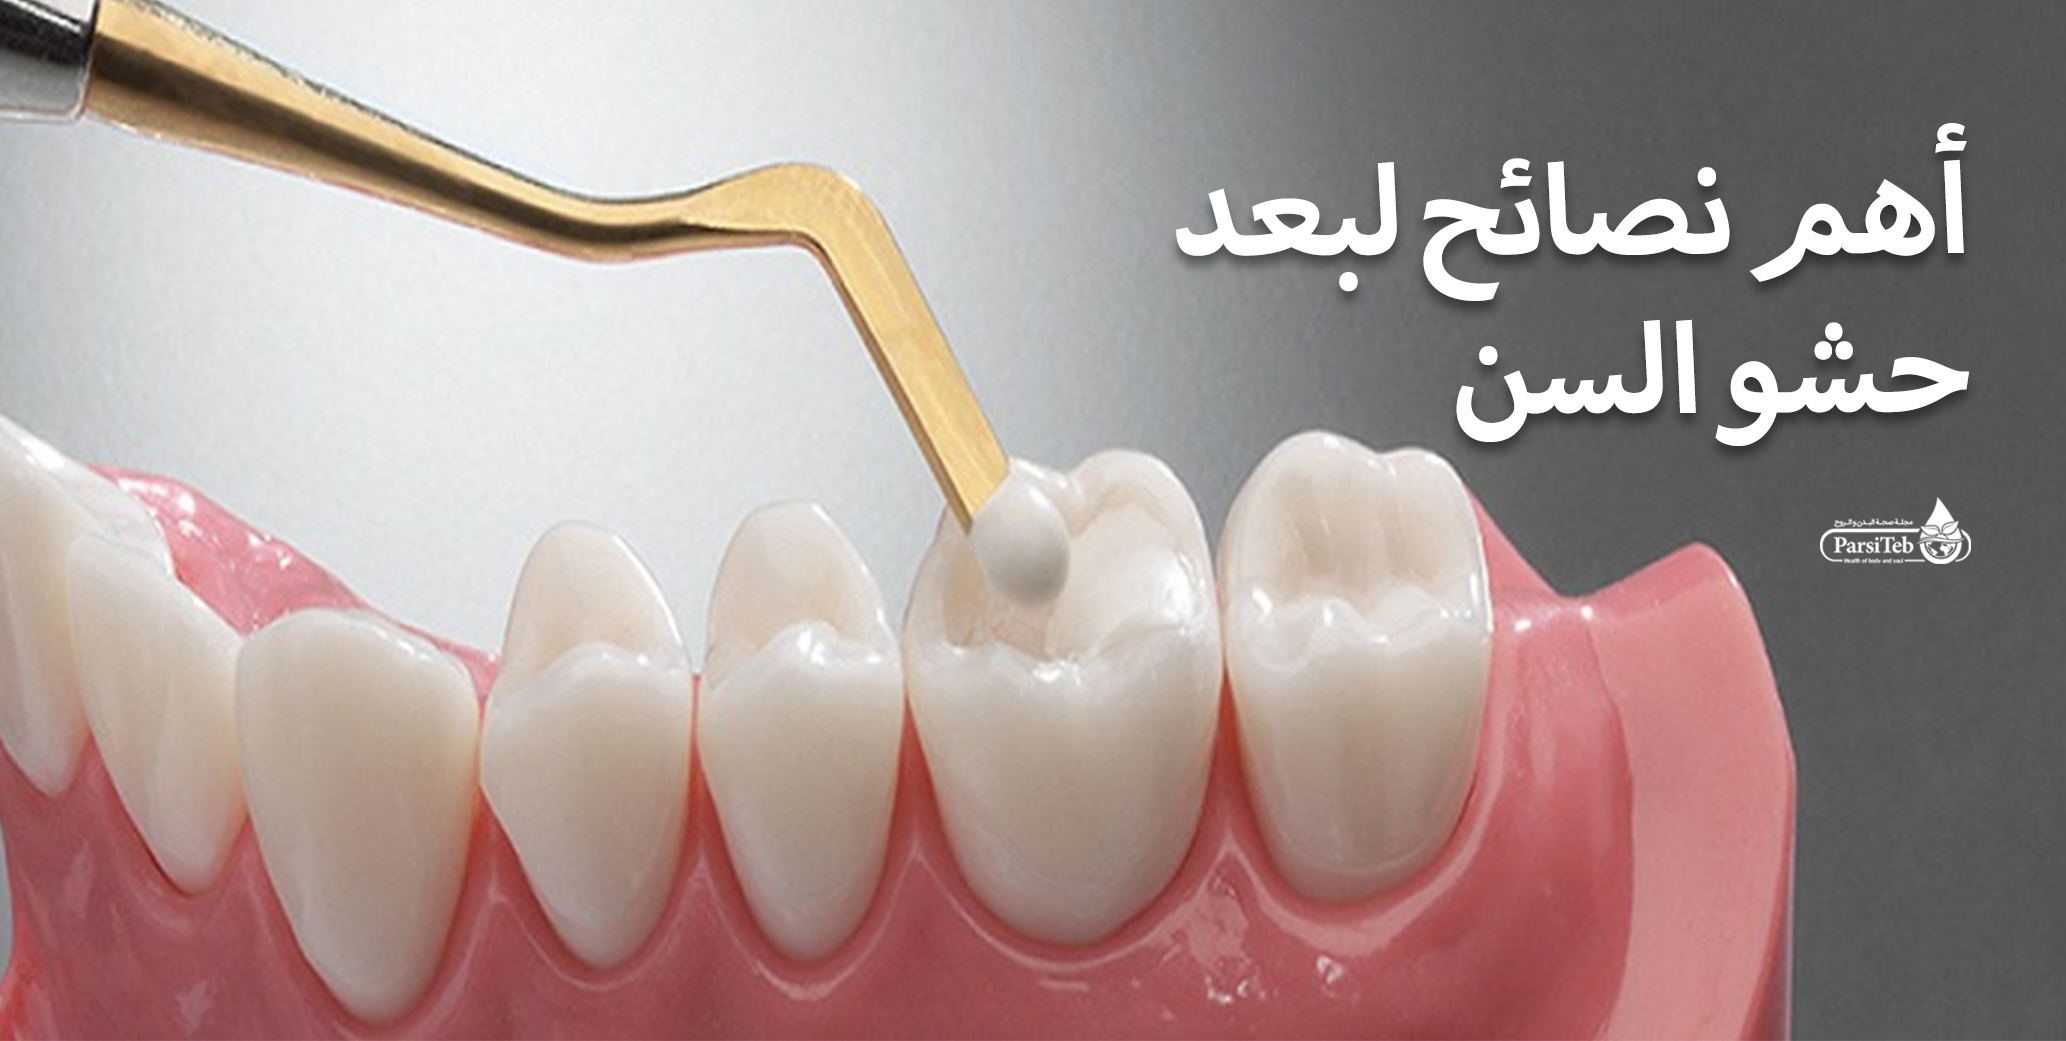 مبدأ الإزاحة في تصوير الأسنان مع شرح بالأمثلة In 2021 Dental Vr Goggle Electronic Products